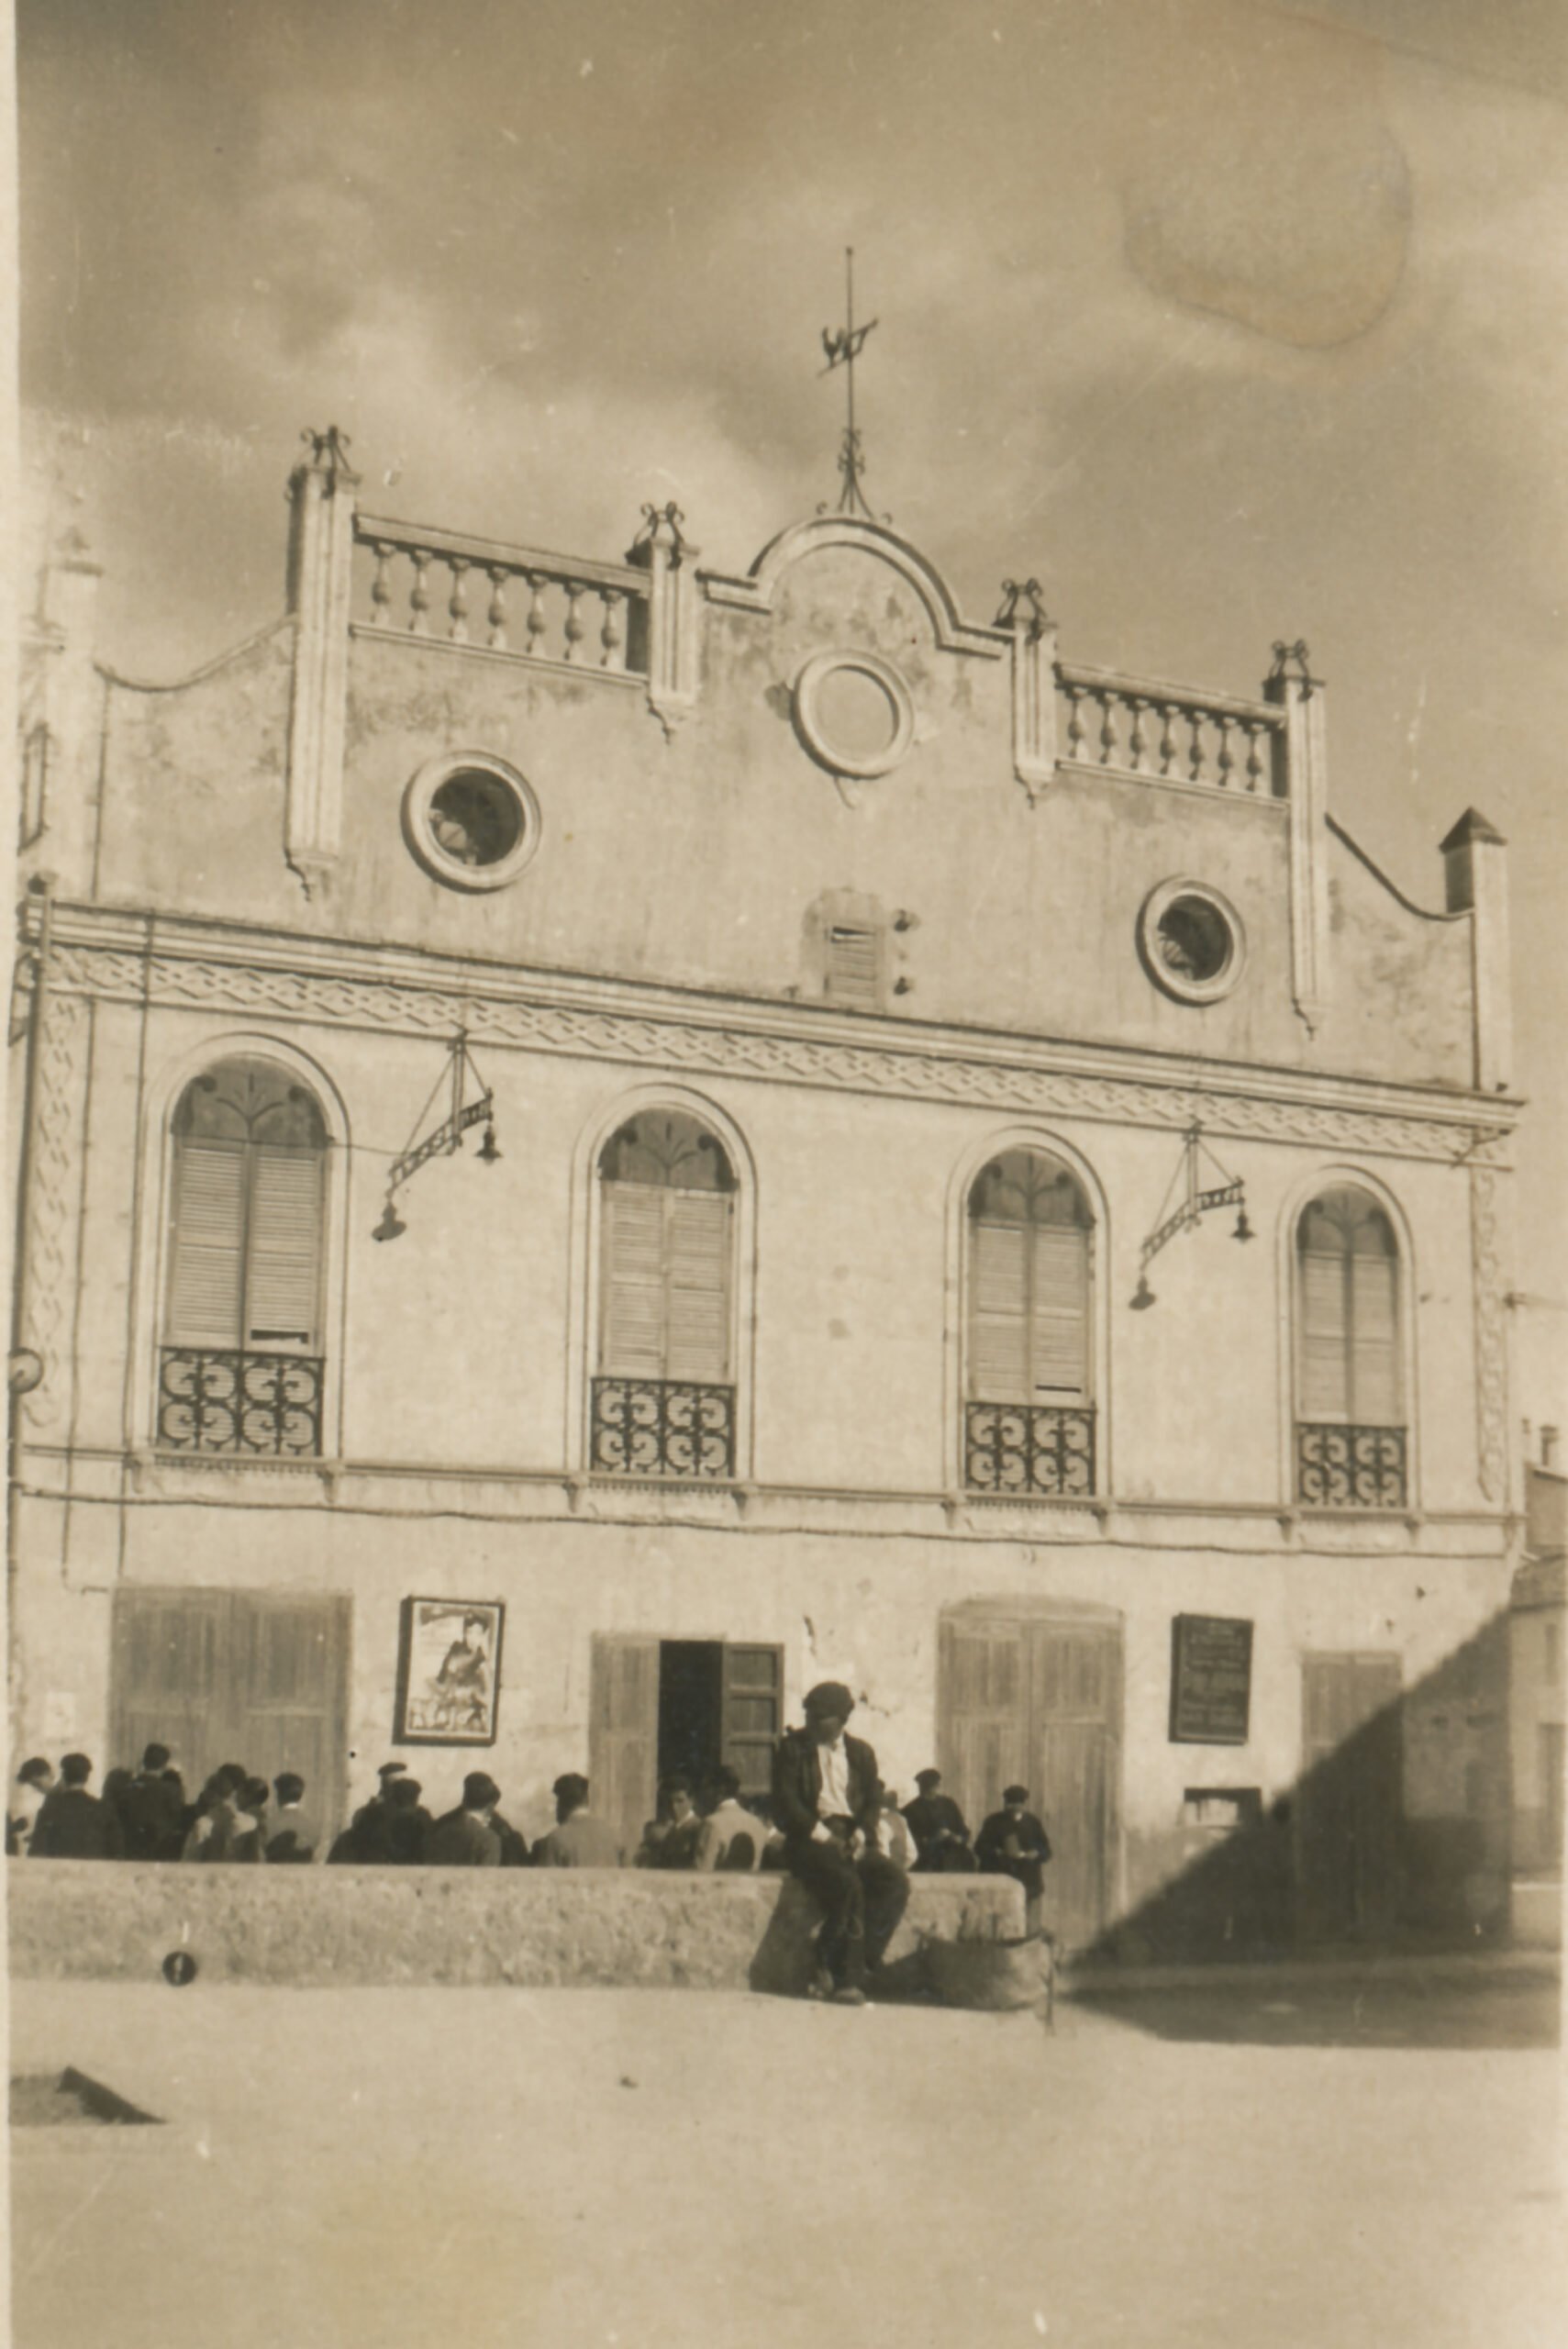 Cine Pathè de Pego en 1950 – Arxiu Municipal de Pego